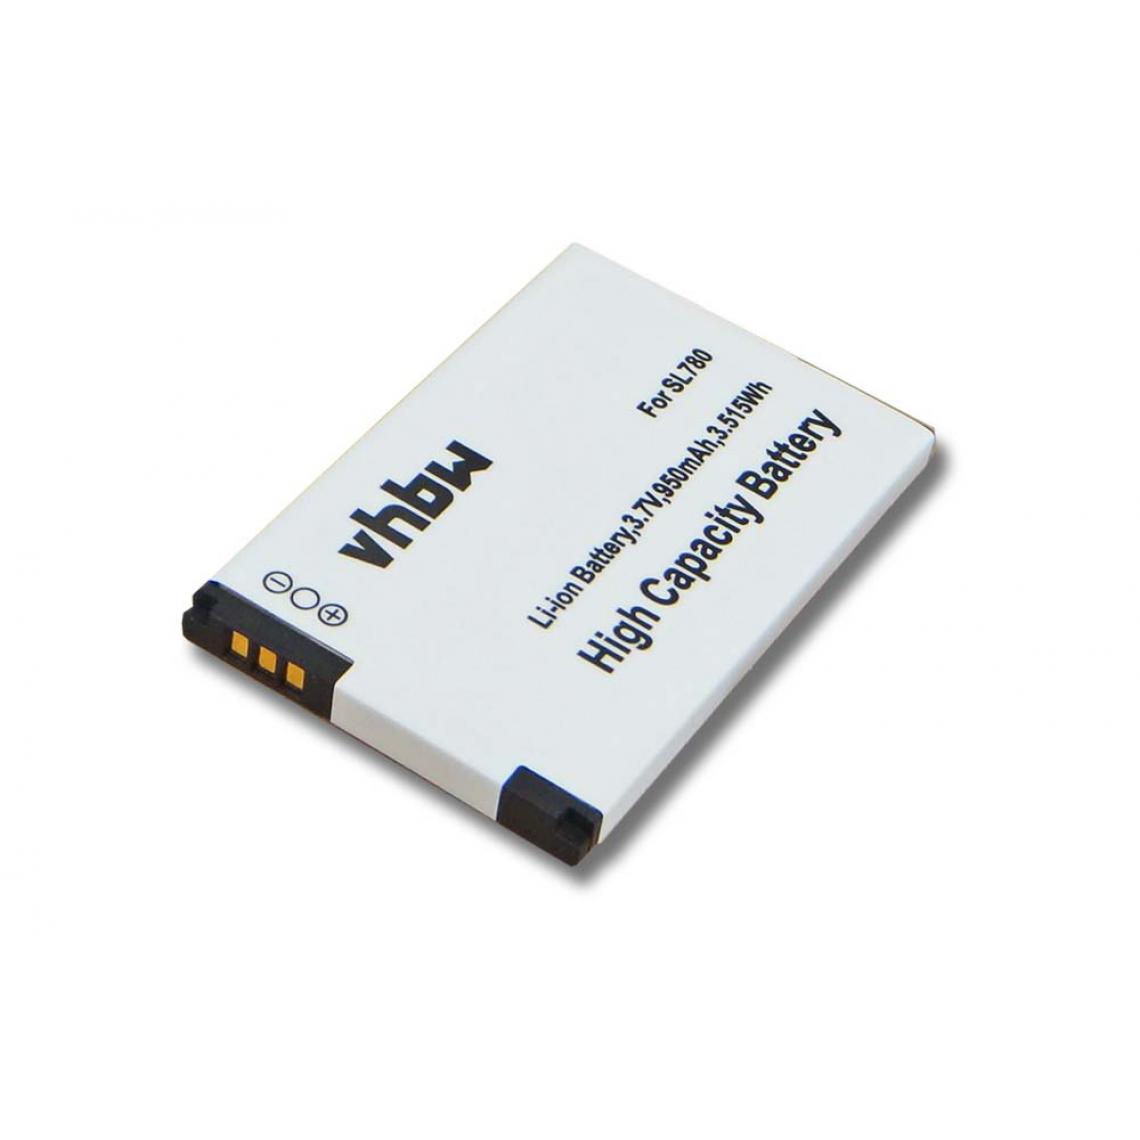 Vhbw - vhbw Batterie compatible avec Unify OpenScape SL5, OpenStage SL4 Professional, SL400 téléphone fixe sans fil (950mAh, 3,7V, Li-ion) - Batterie téléphone